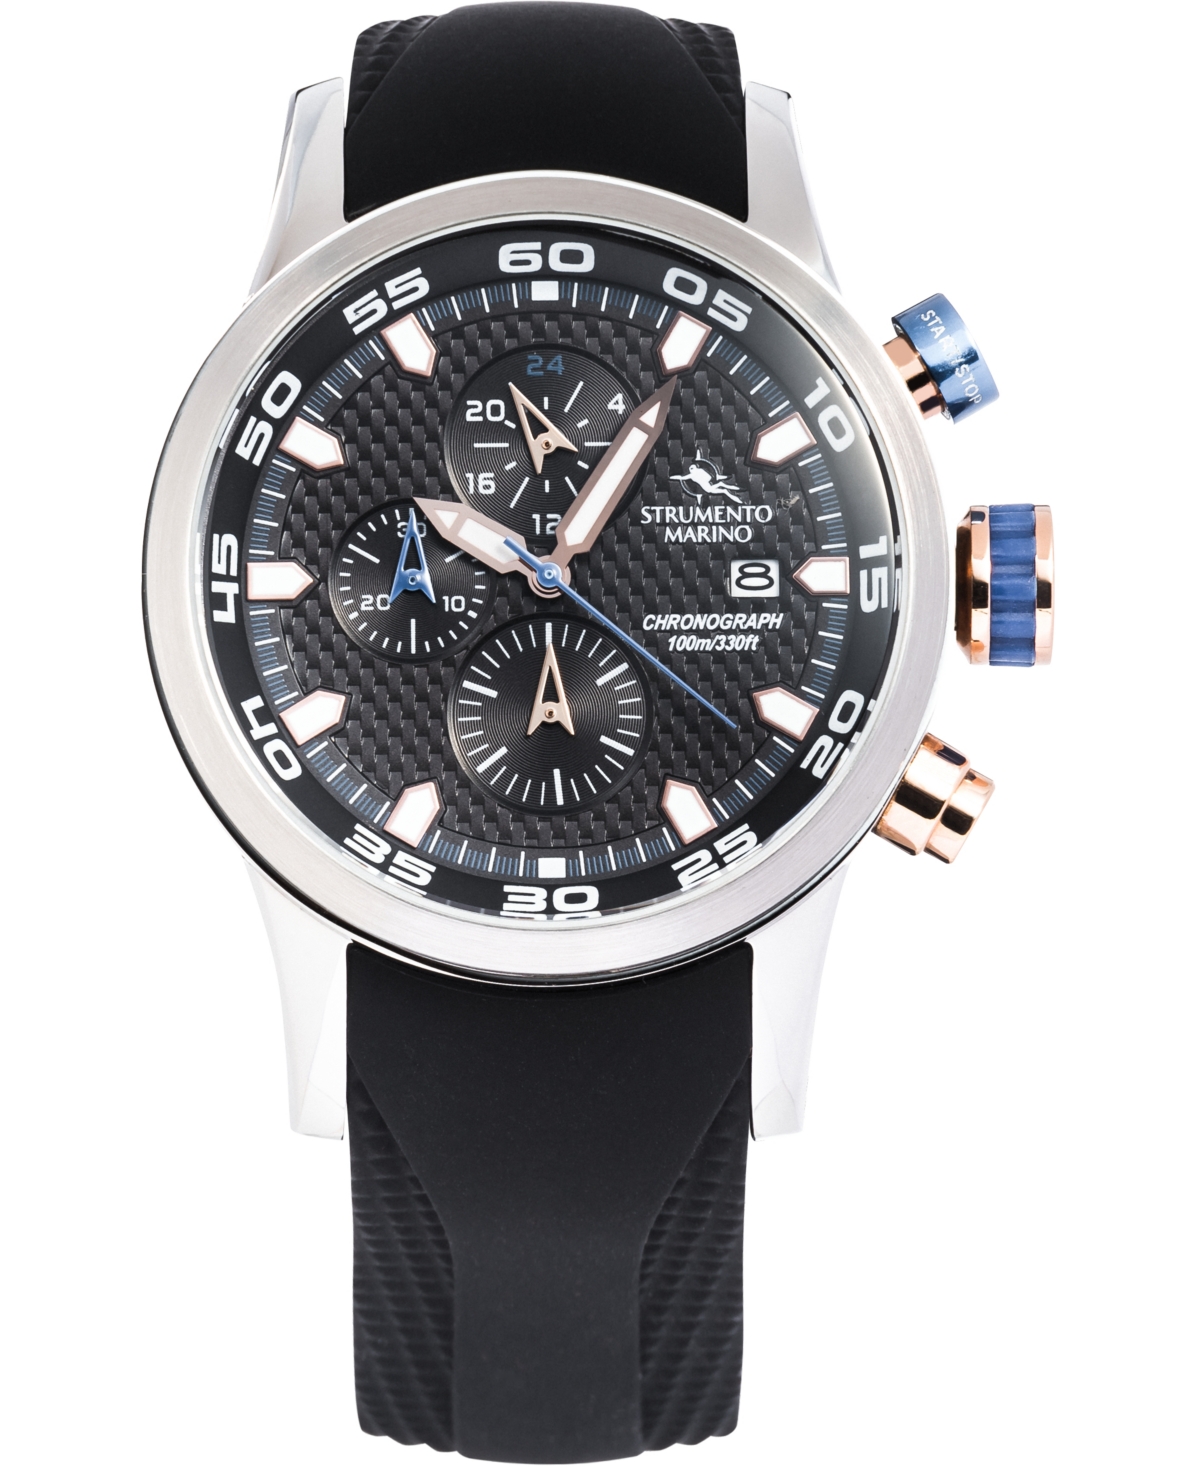 Men's Speedboat Black Silicone Performance Timepiece Watch 46mm - Black